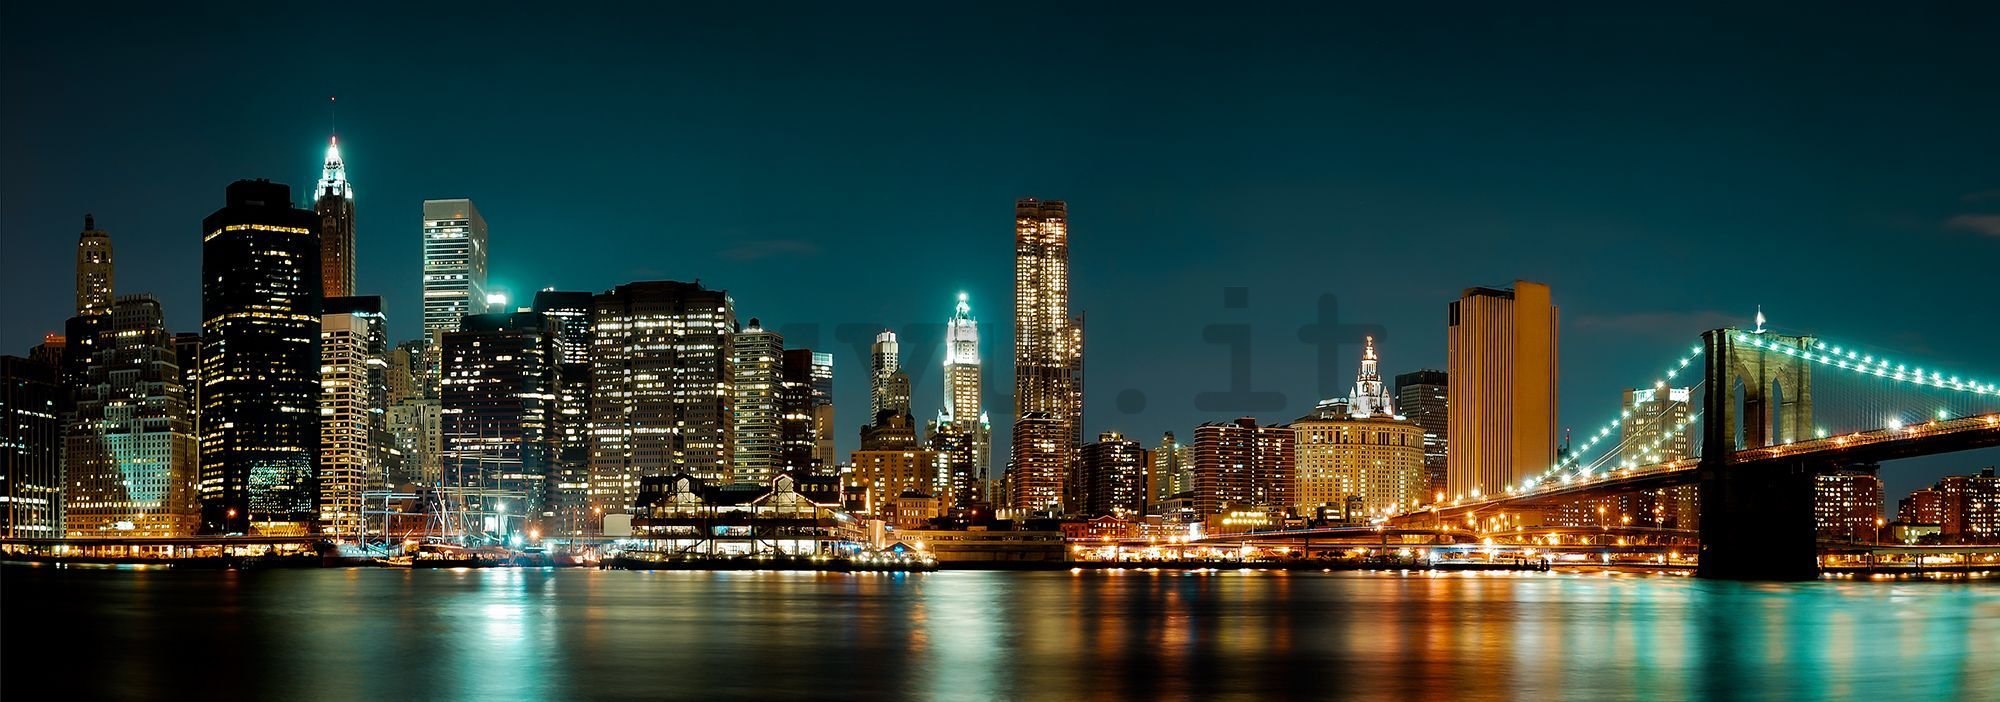 Fotomurale: N.Y. di notte - 624x219 cm